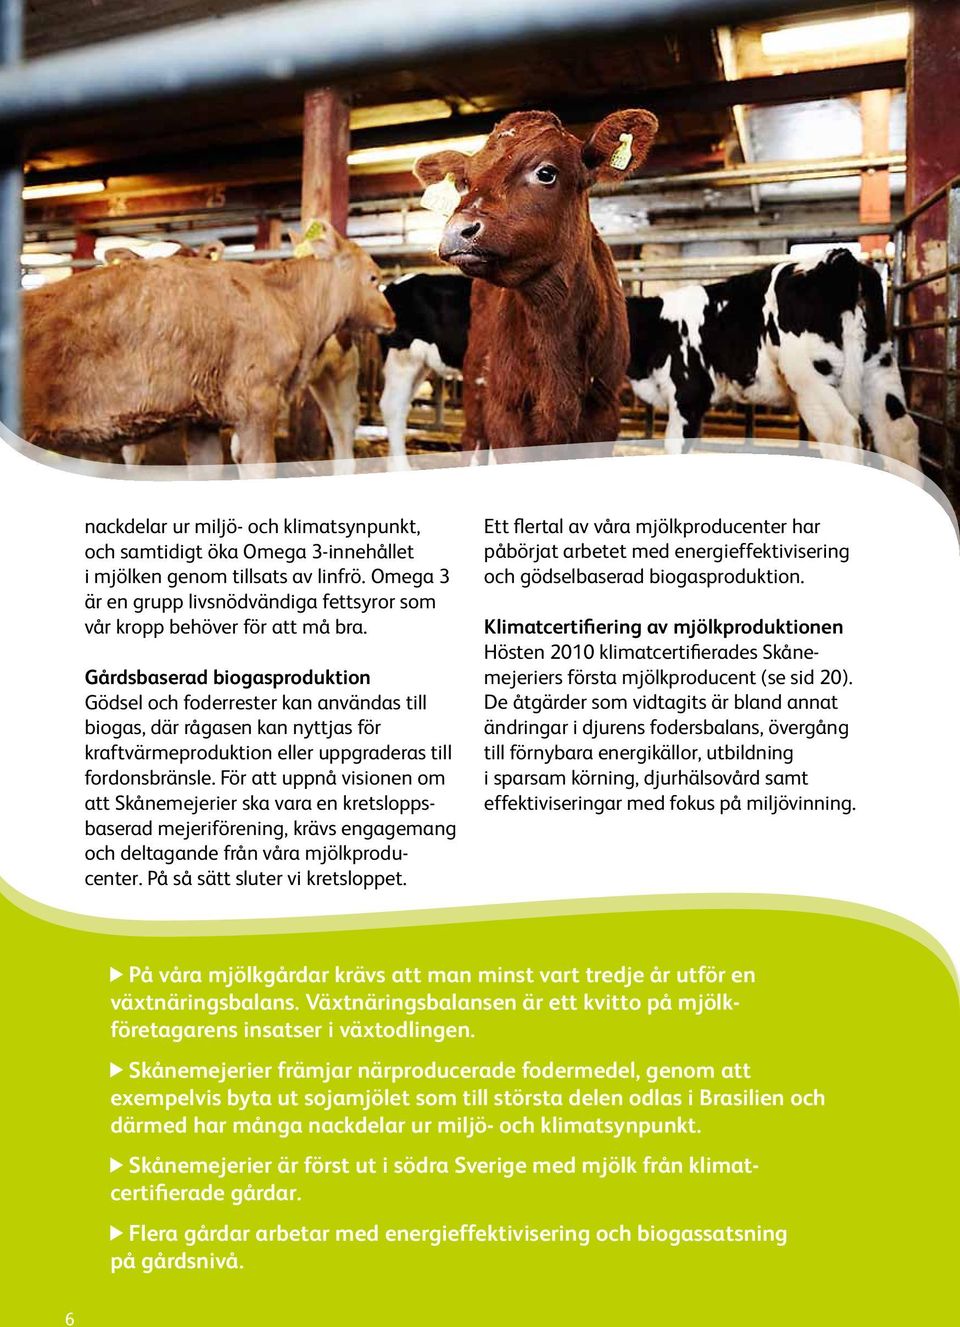 För att uppnå visionen om att Skånemejerier ska vara en kretsloppsbaserad mejeriförening, krävs engagemang och deltagande från våra mjölkproducenter. På så sätt sluter vi kretsloppet.